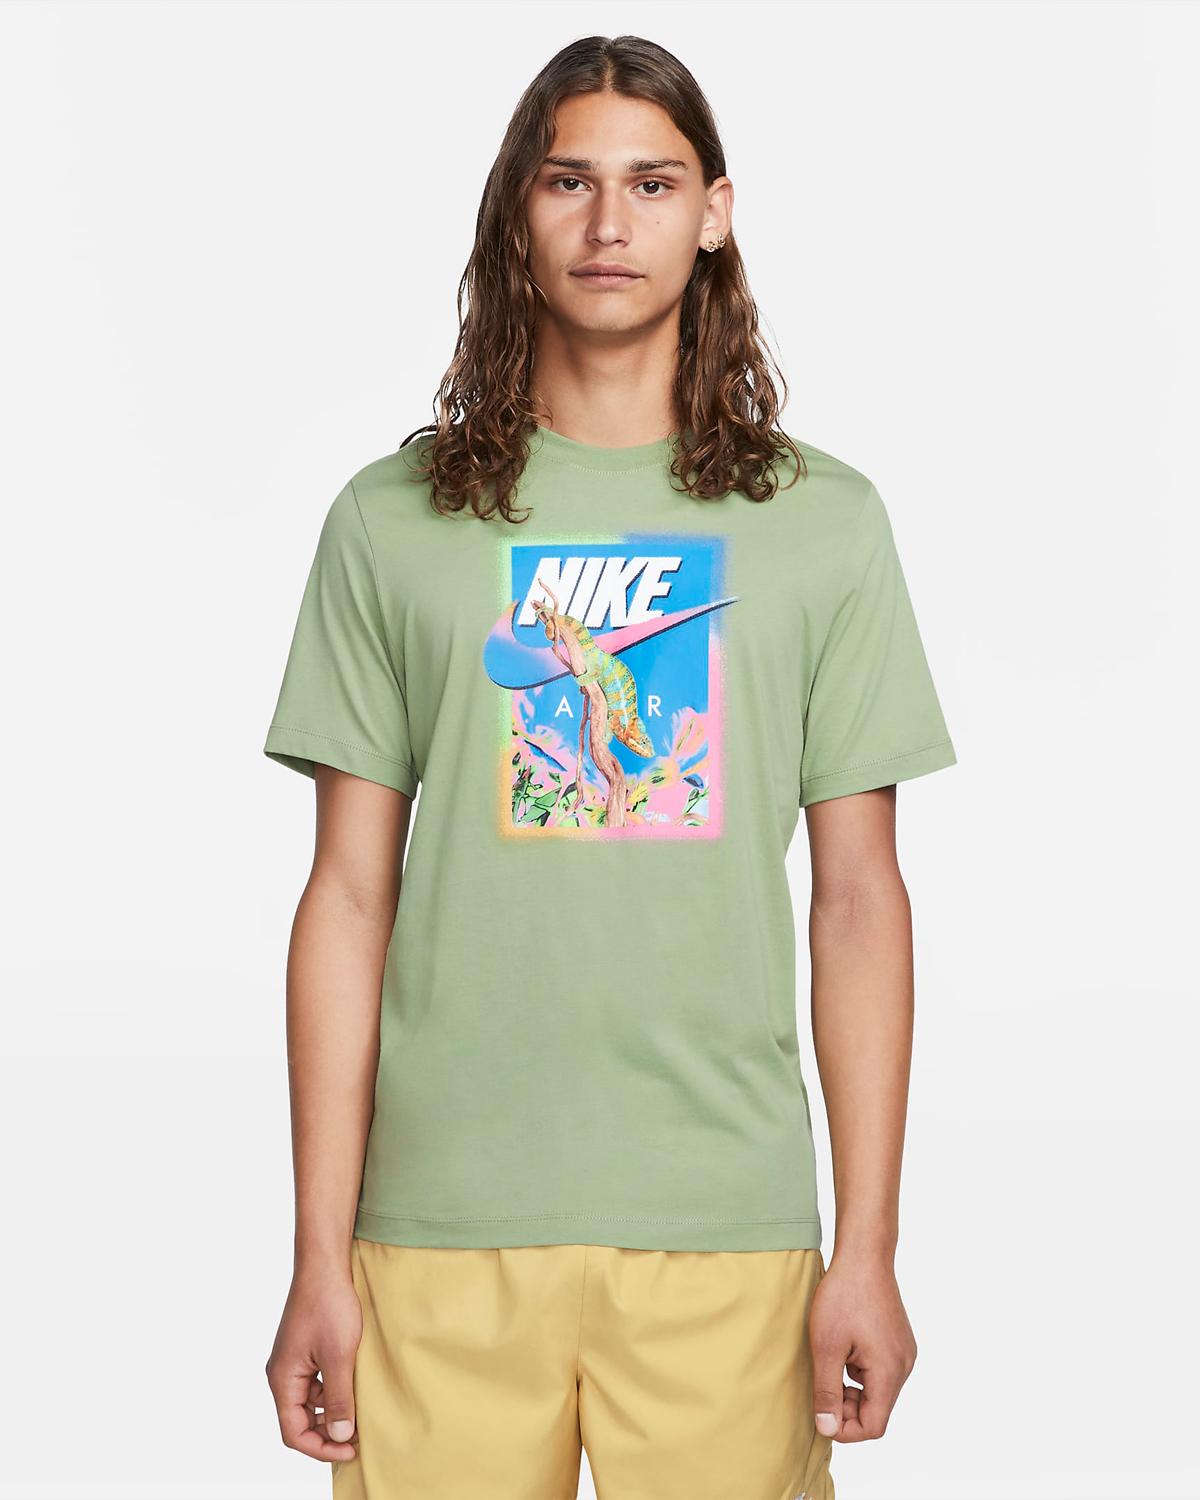 Nike-Oil-Green-Chameleon-T-Shirt